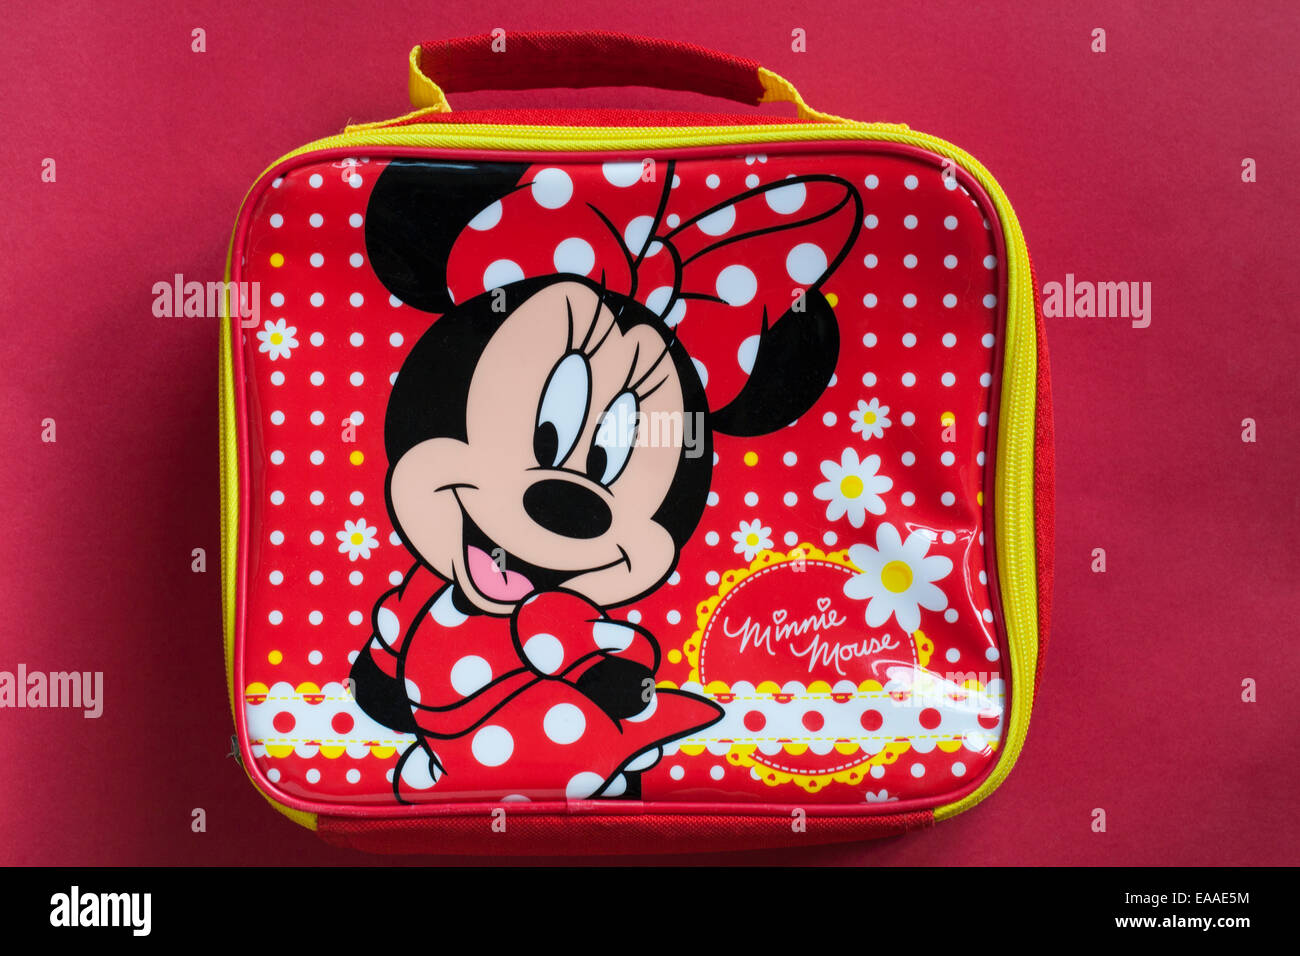 parálisis mientras tanto Caprichoso Minnie Mouse del niño Bag lunch box set sobre fondo rojo Fotografía de  stock - Alamy